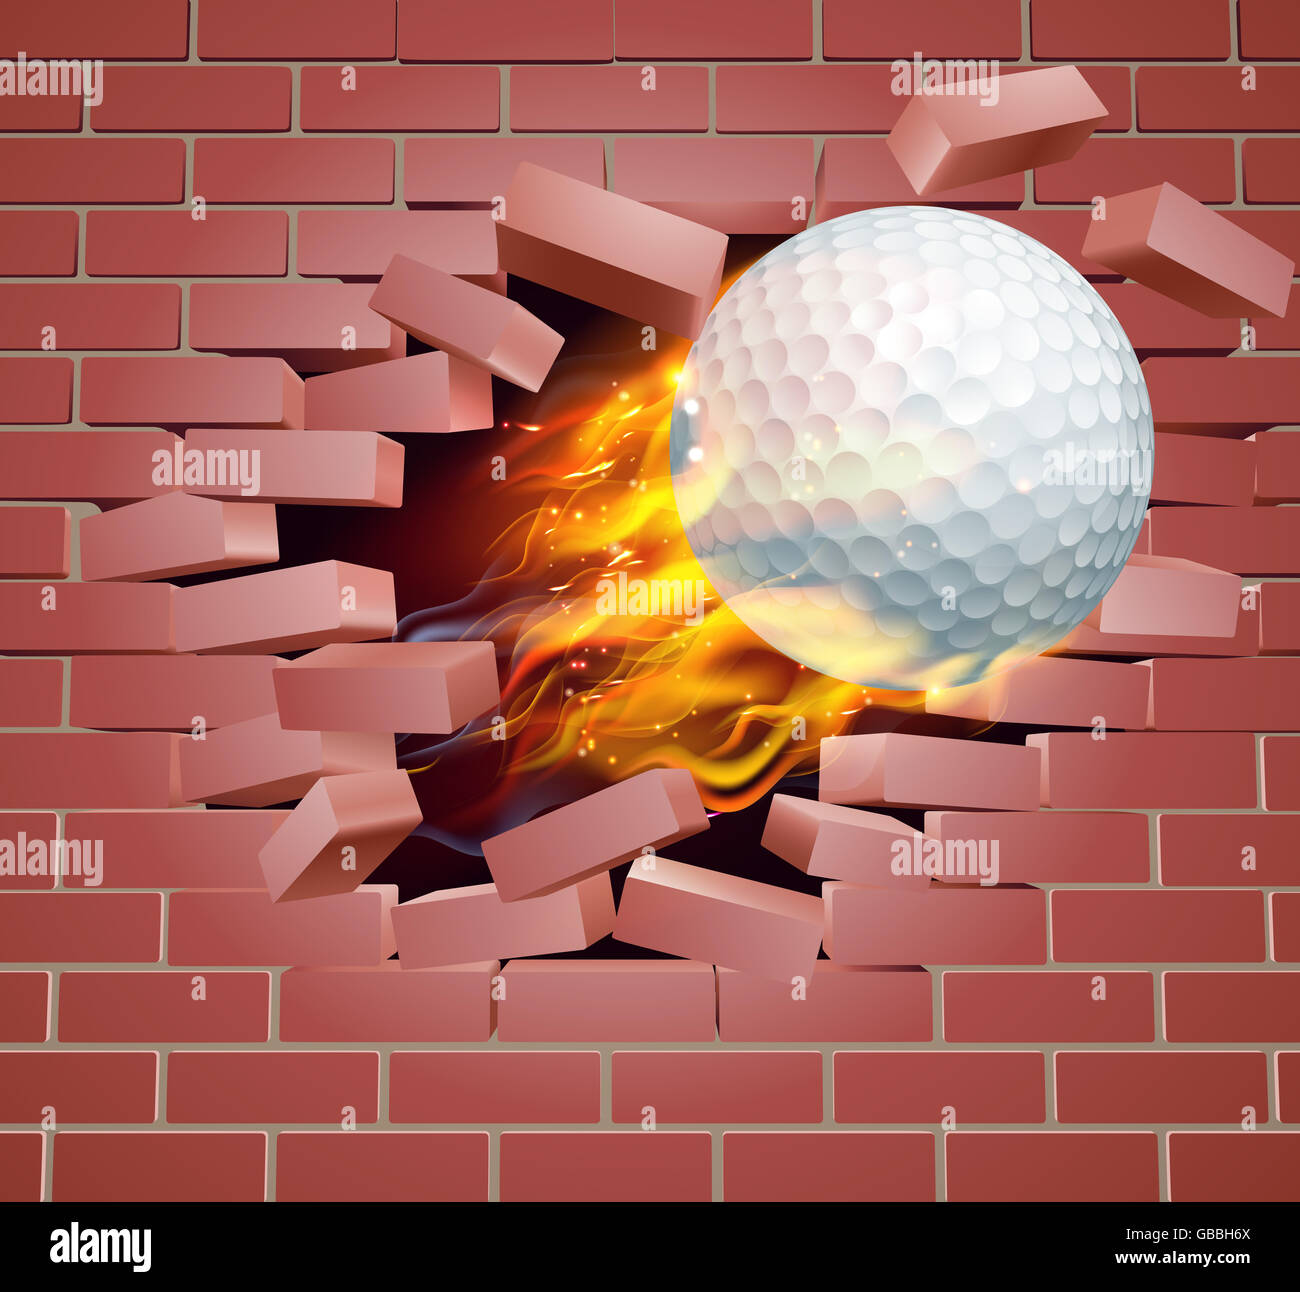 Eine Abbildung eines brennenden flammenden Golfballs auf Feuer reißen ein Loch durch die Wand Stockfoto